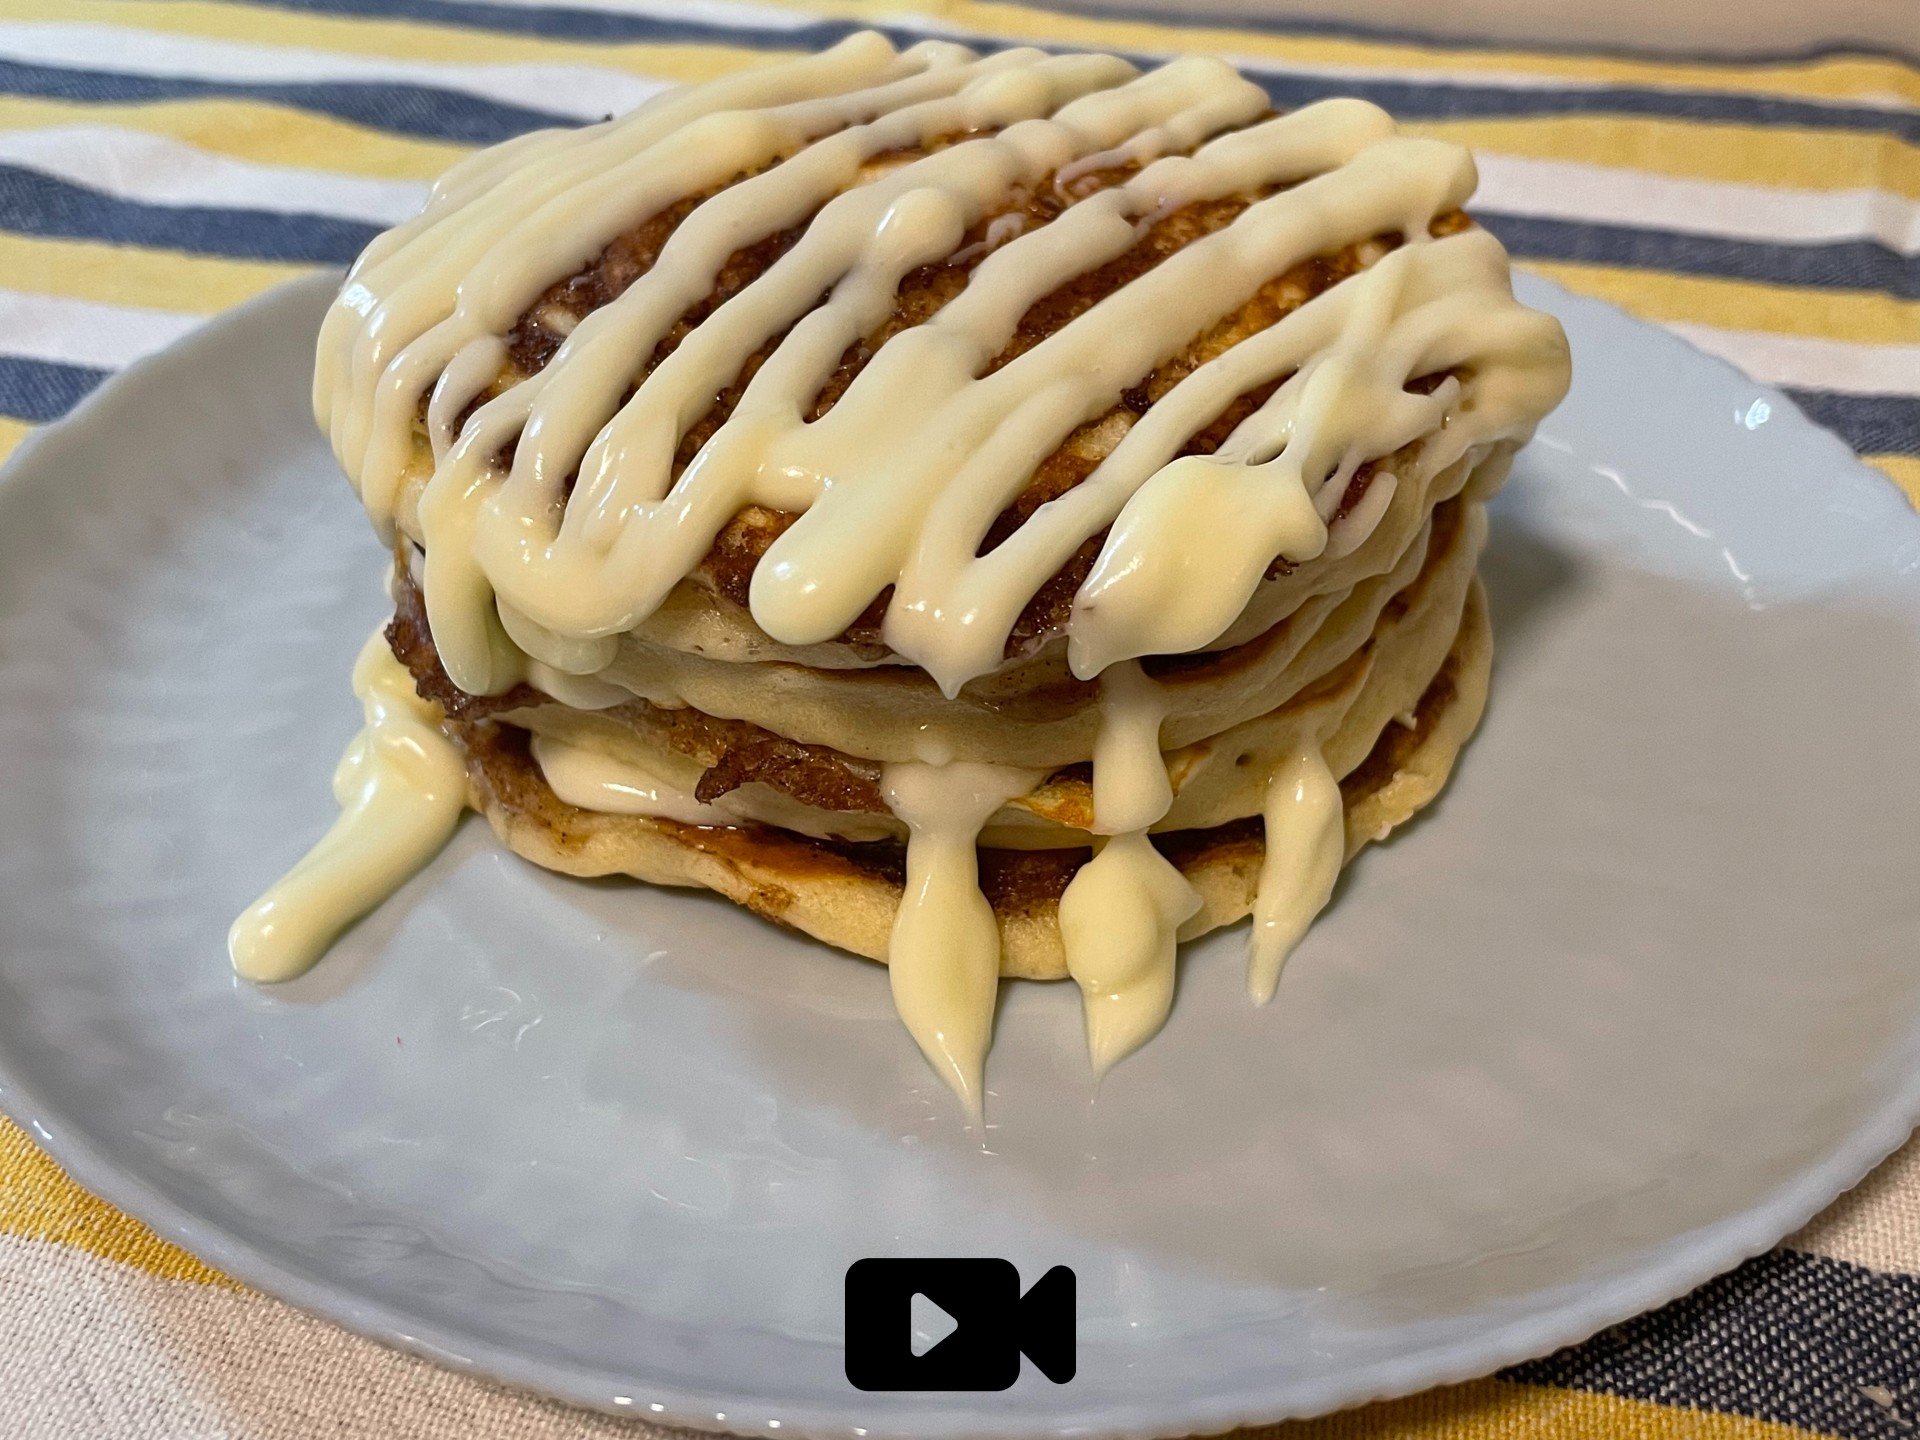 Συνταγή για τα διάσημα cinnamon roll pancakes. Είναι αφράτα, ζουμερά και γευστικά με άρωμα κανέλας και υπέροχου frosting με κρέμα τυρί.